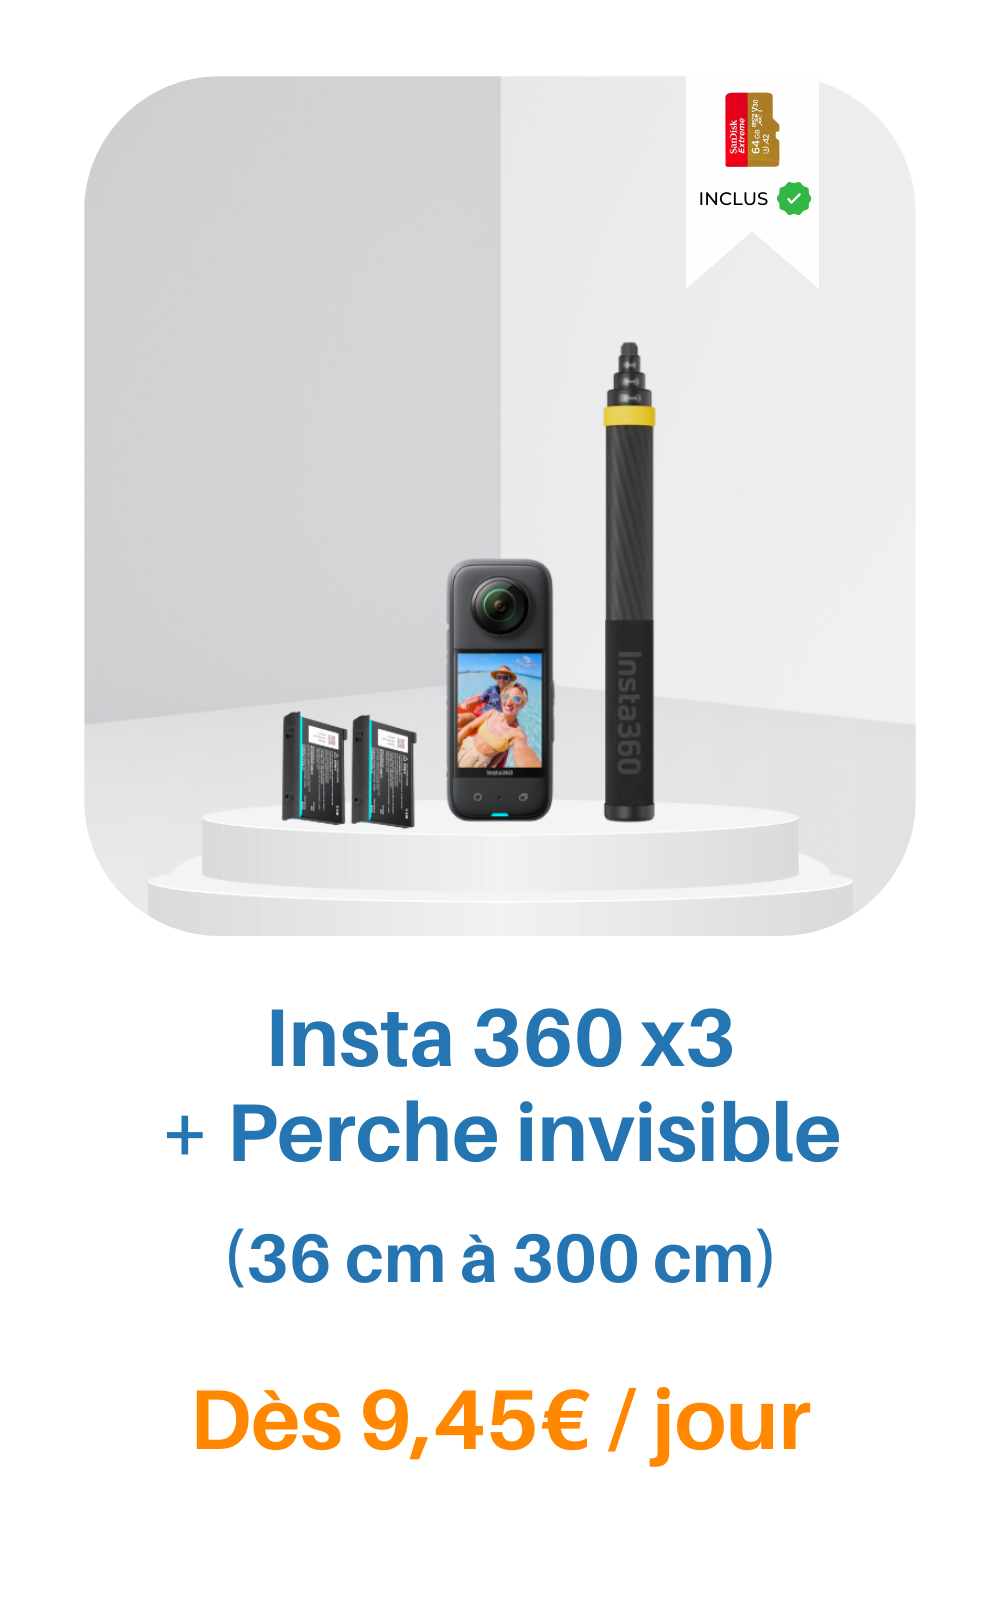 Location Insta360 X3 + Grande perche invisible dès 9,45€/jour